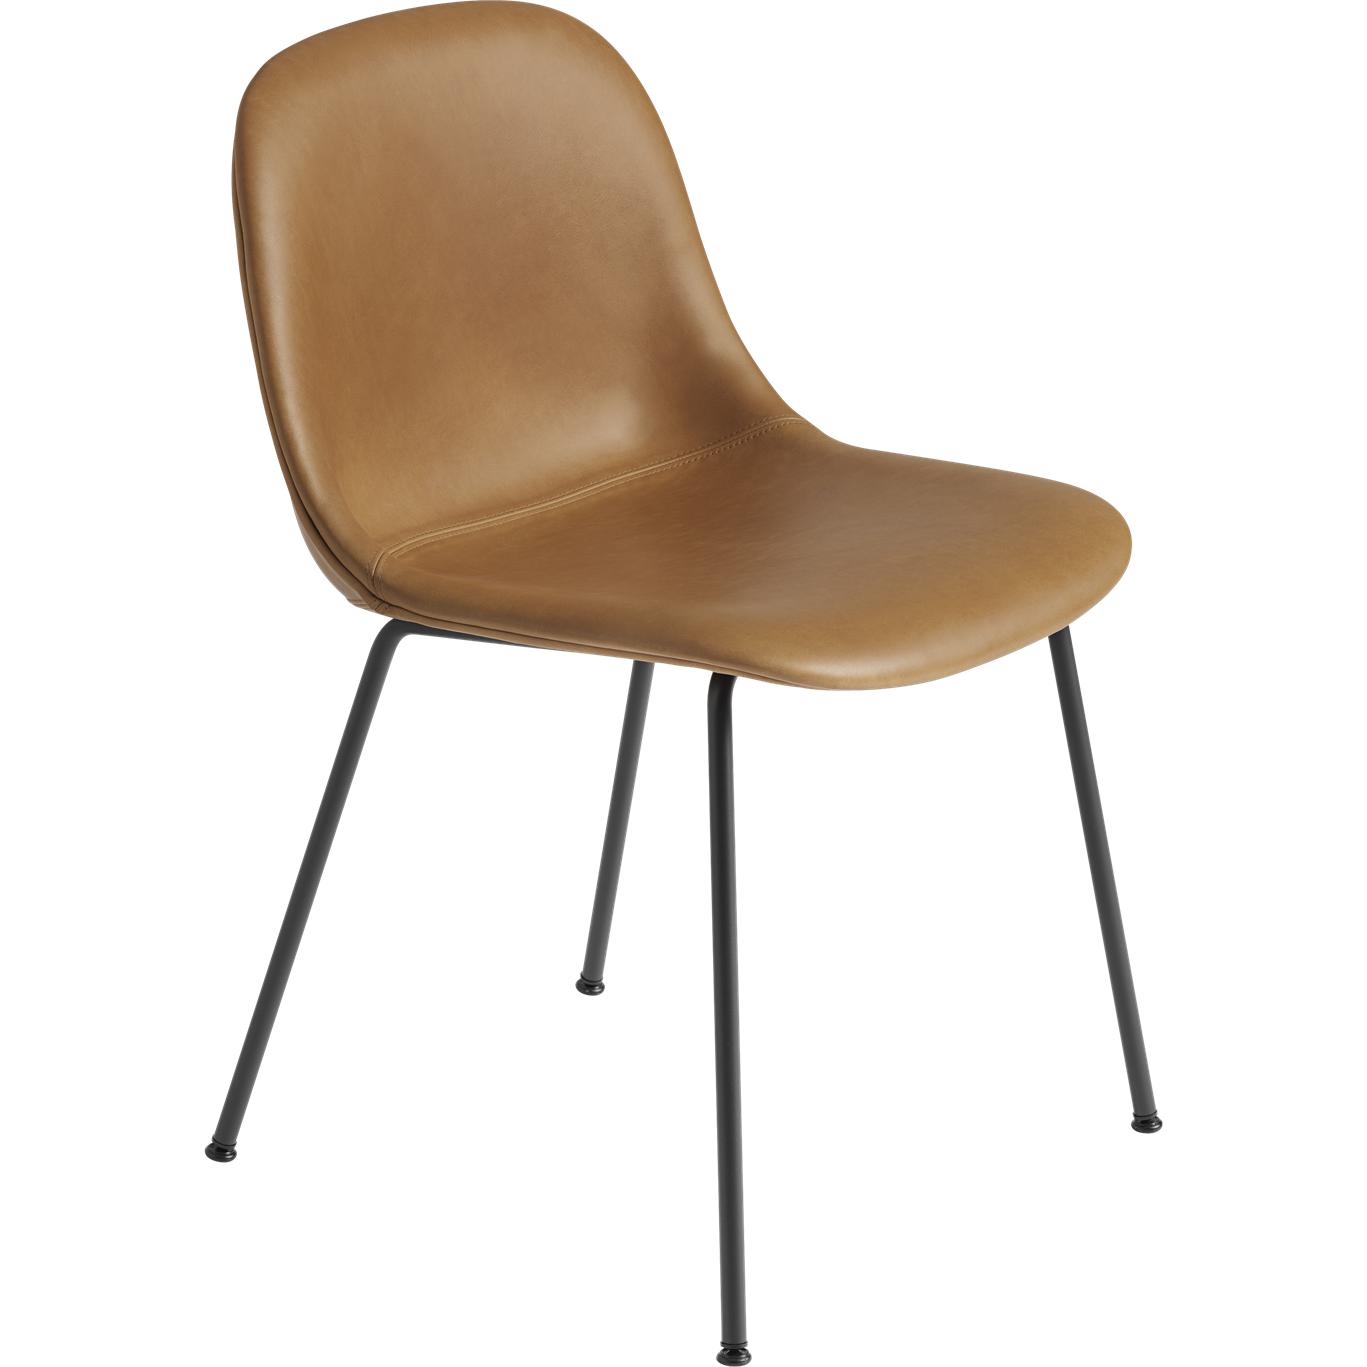 Base de tubo de silla lateral de fibra muuto, asiento de cuero, cuero de coñac marrón